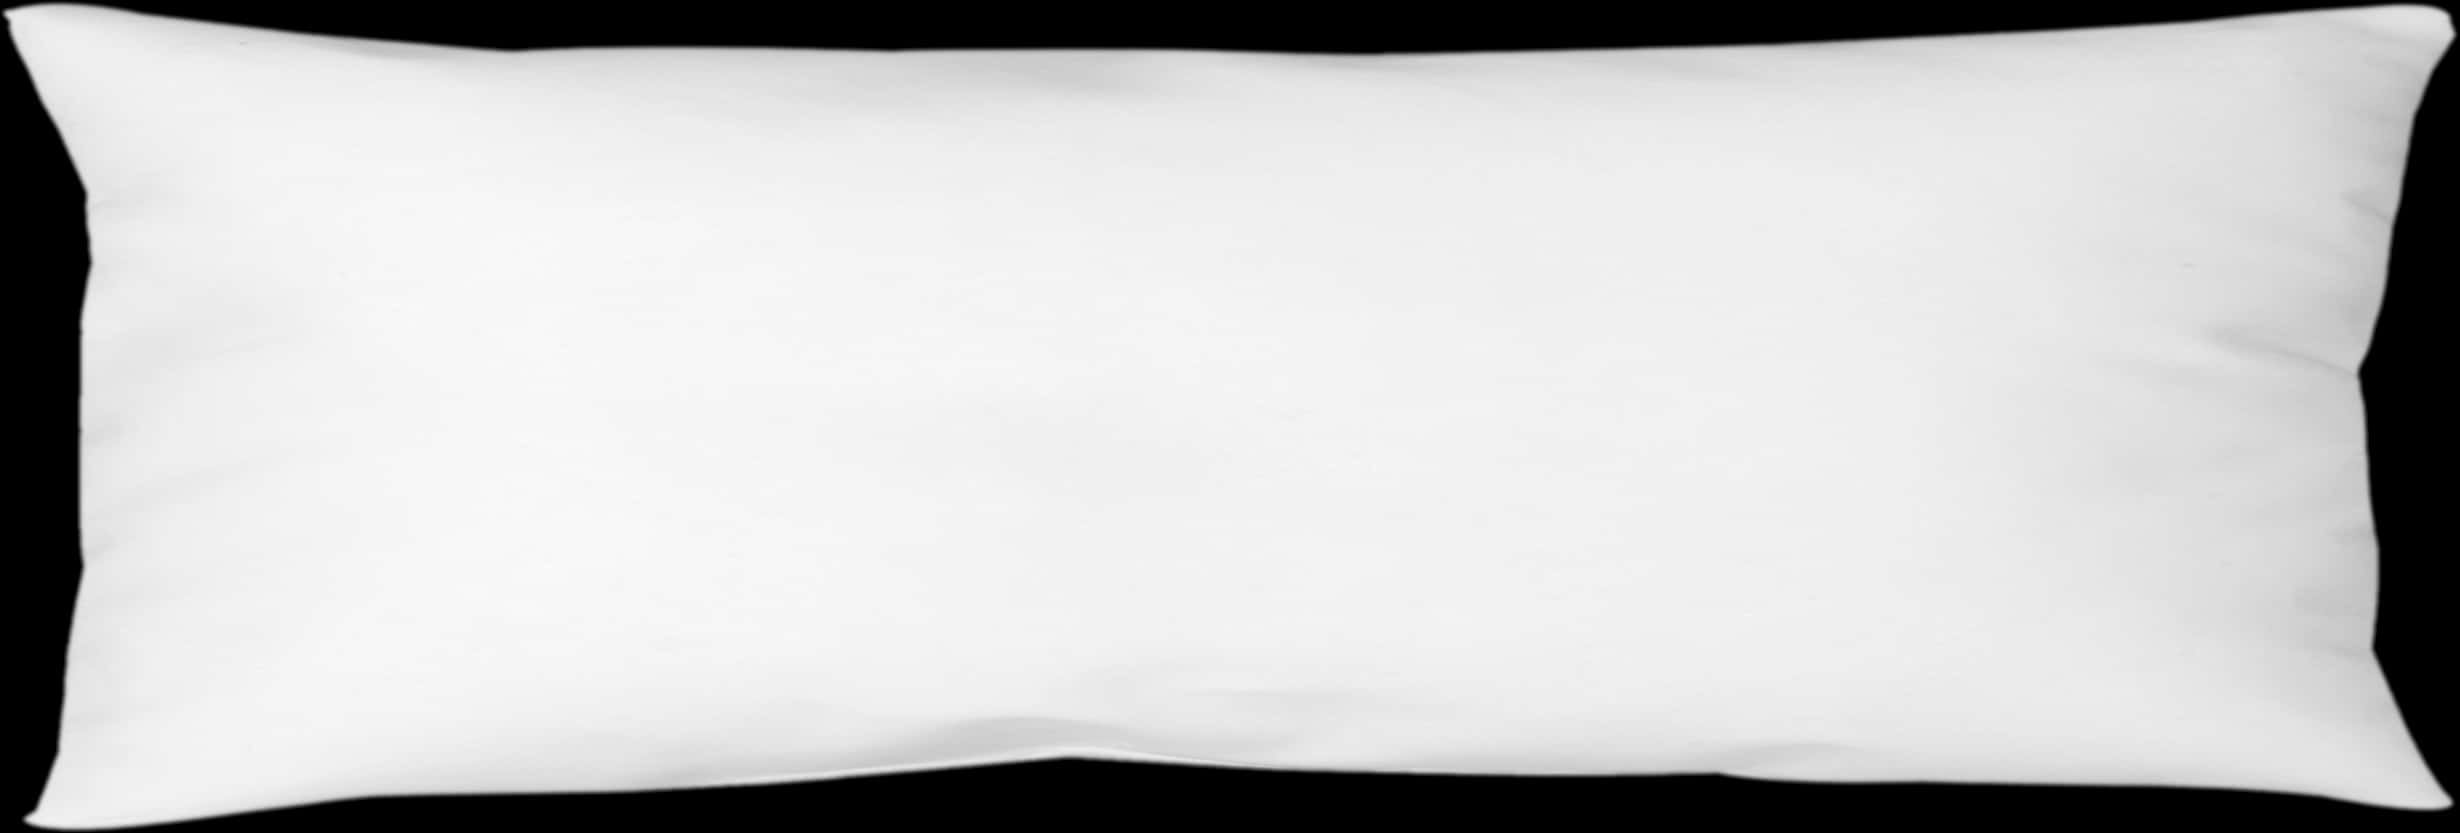 White Rectangular Pillowon Black Background.jpg